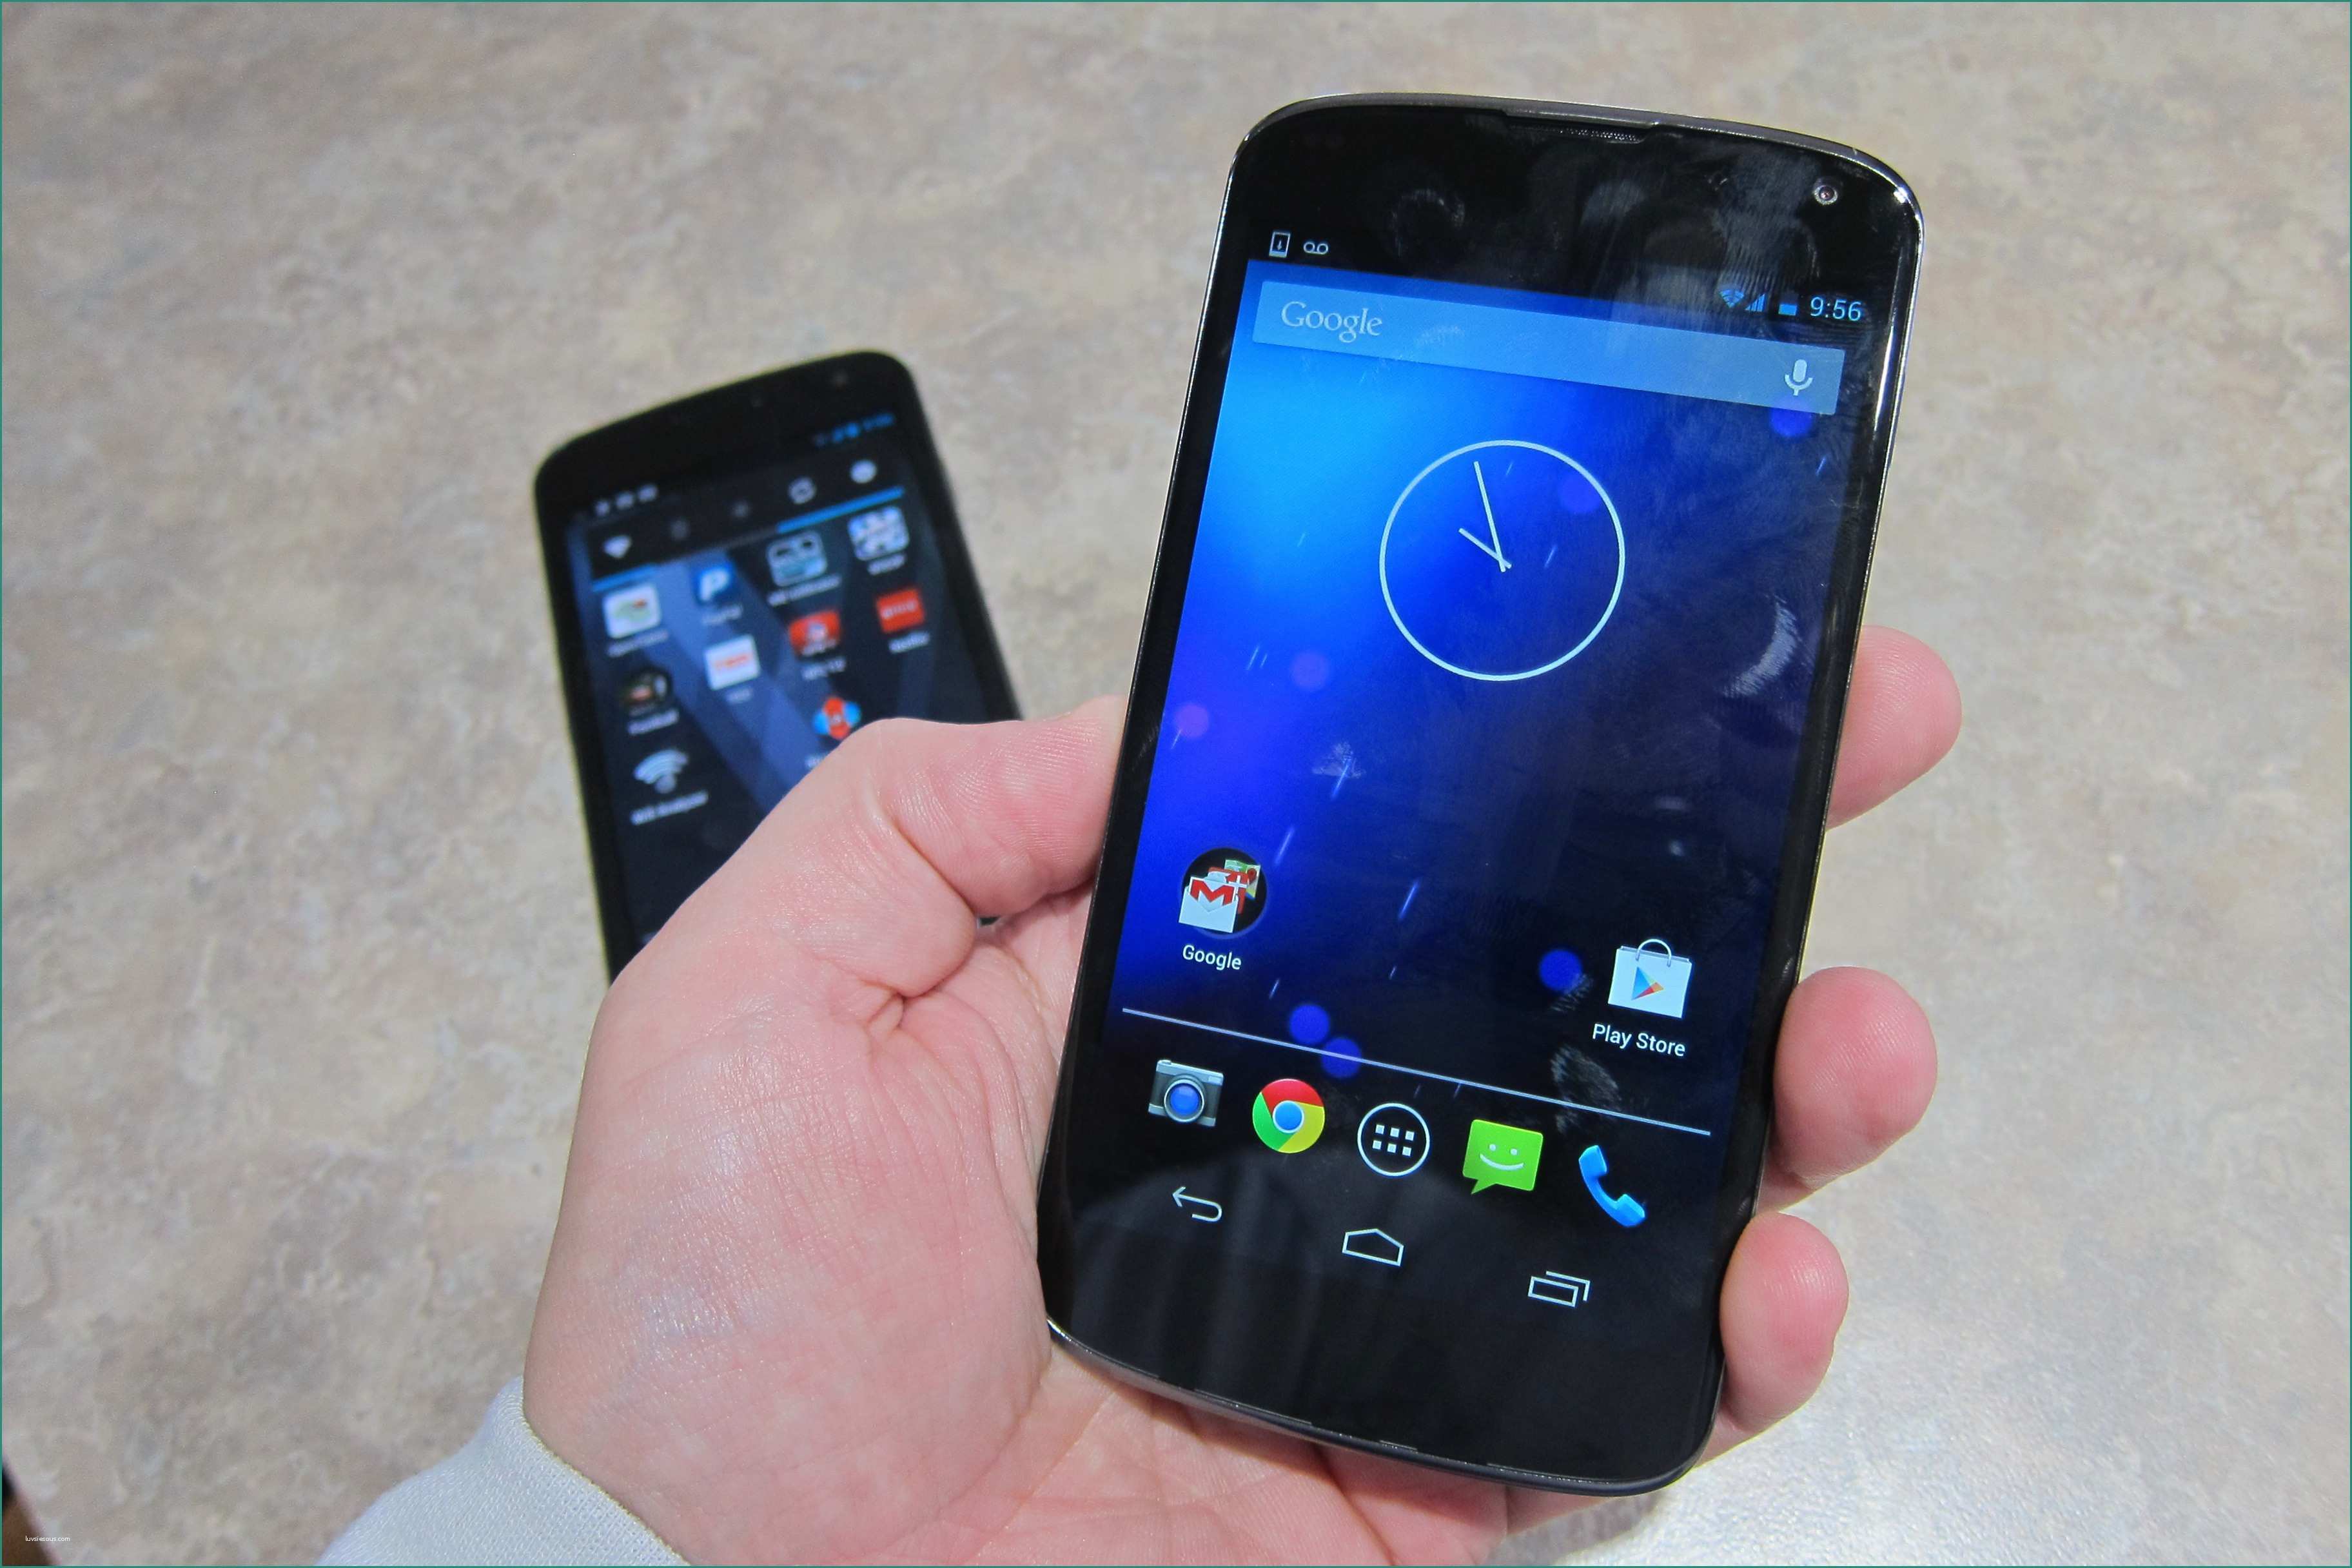 Nexus Stockisti E How to Flash Google Nexus 4 Stock Rom Modify android